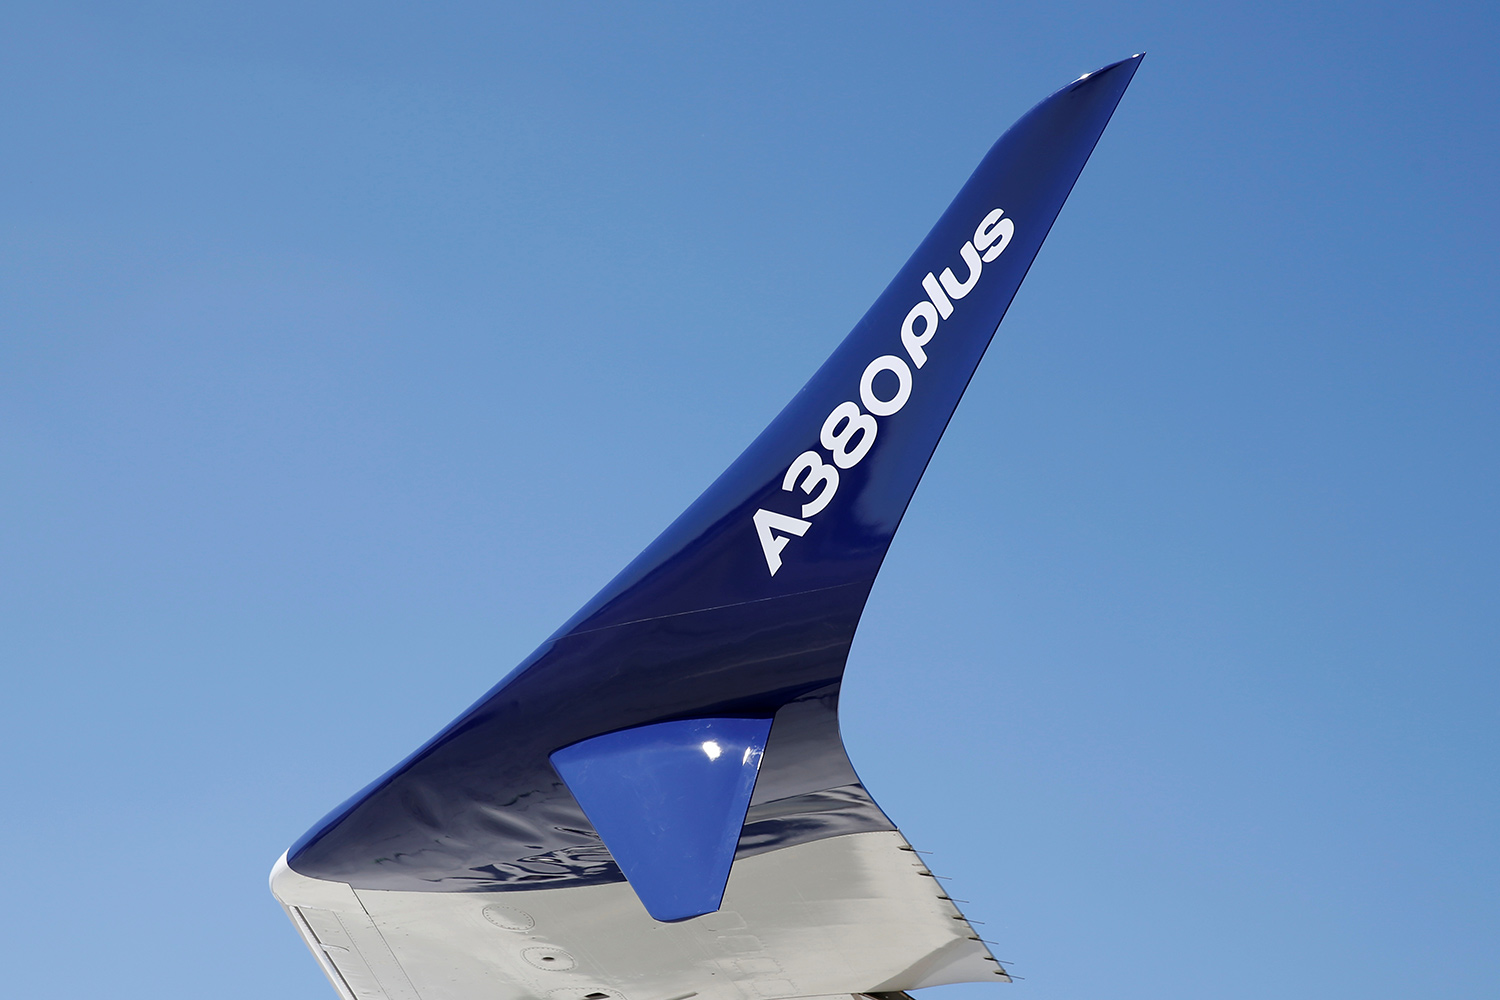 Новая экономичная конструкция расширения крыла на обновленной версии Airbus A380 в преддверии 52-го авиасалона в Ле-Бурже под Парижем, Франция